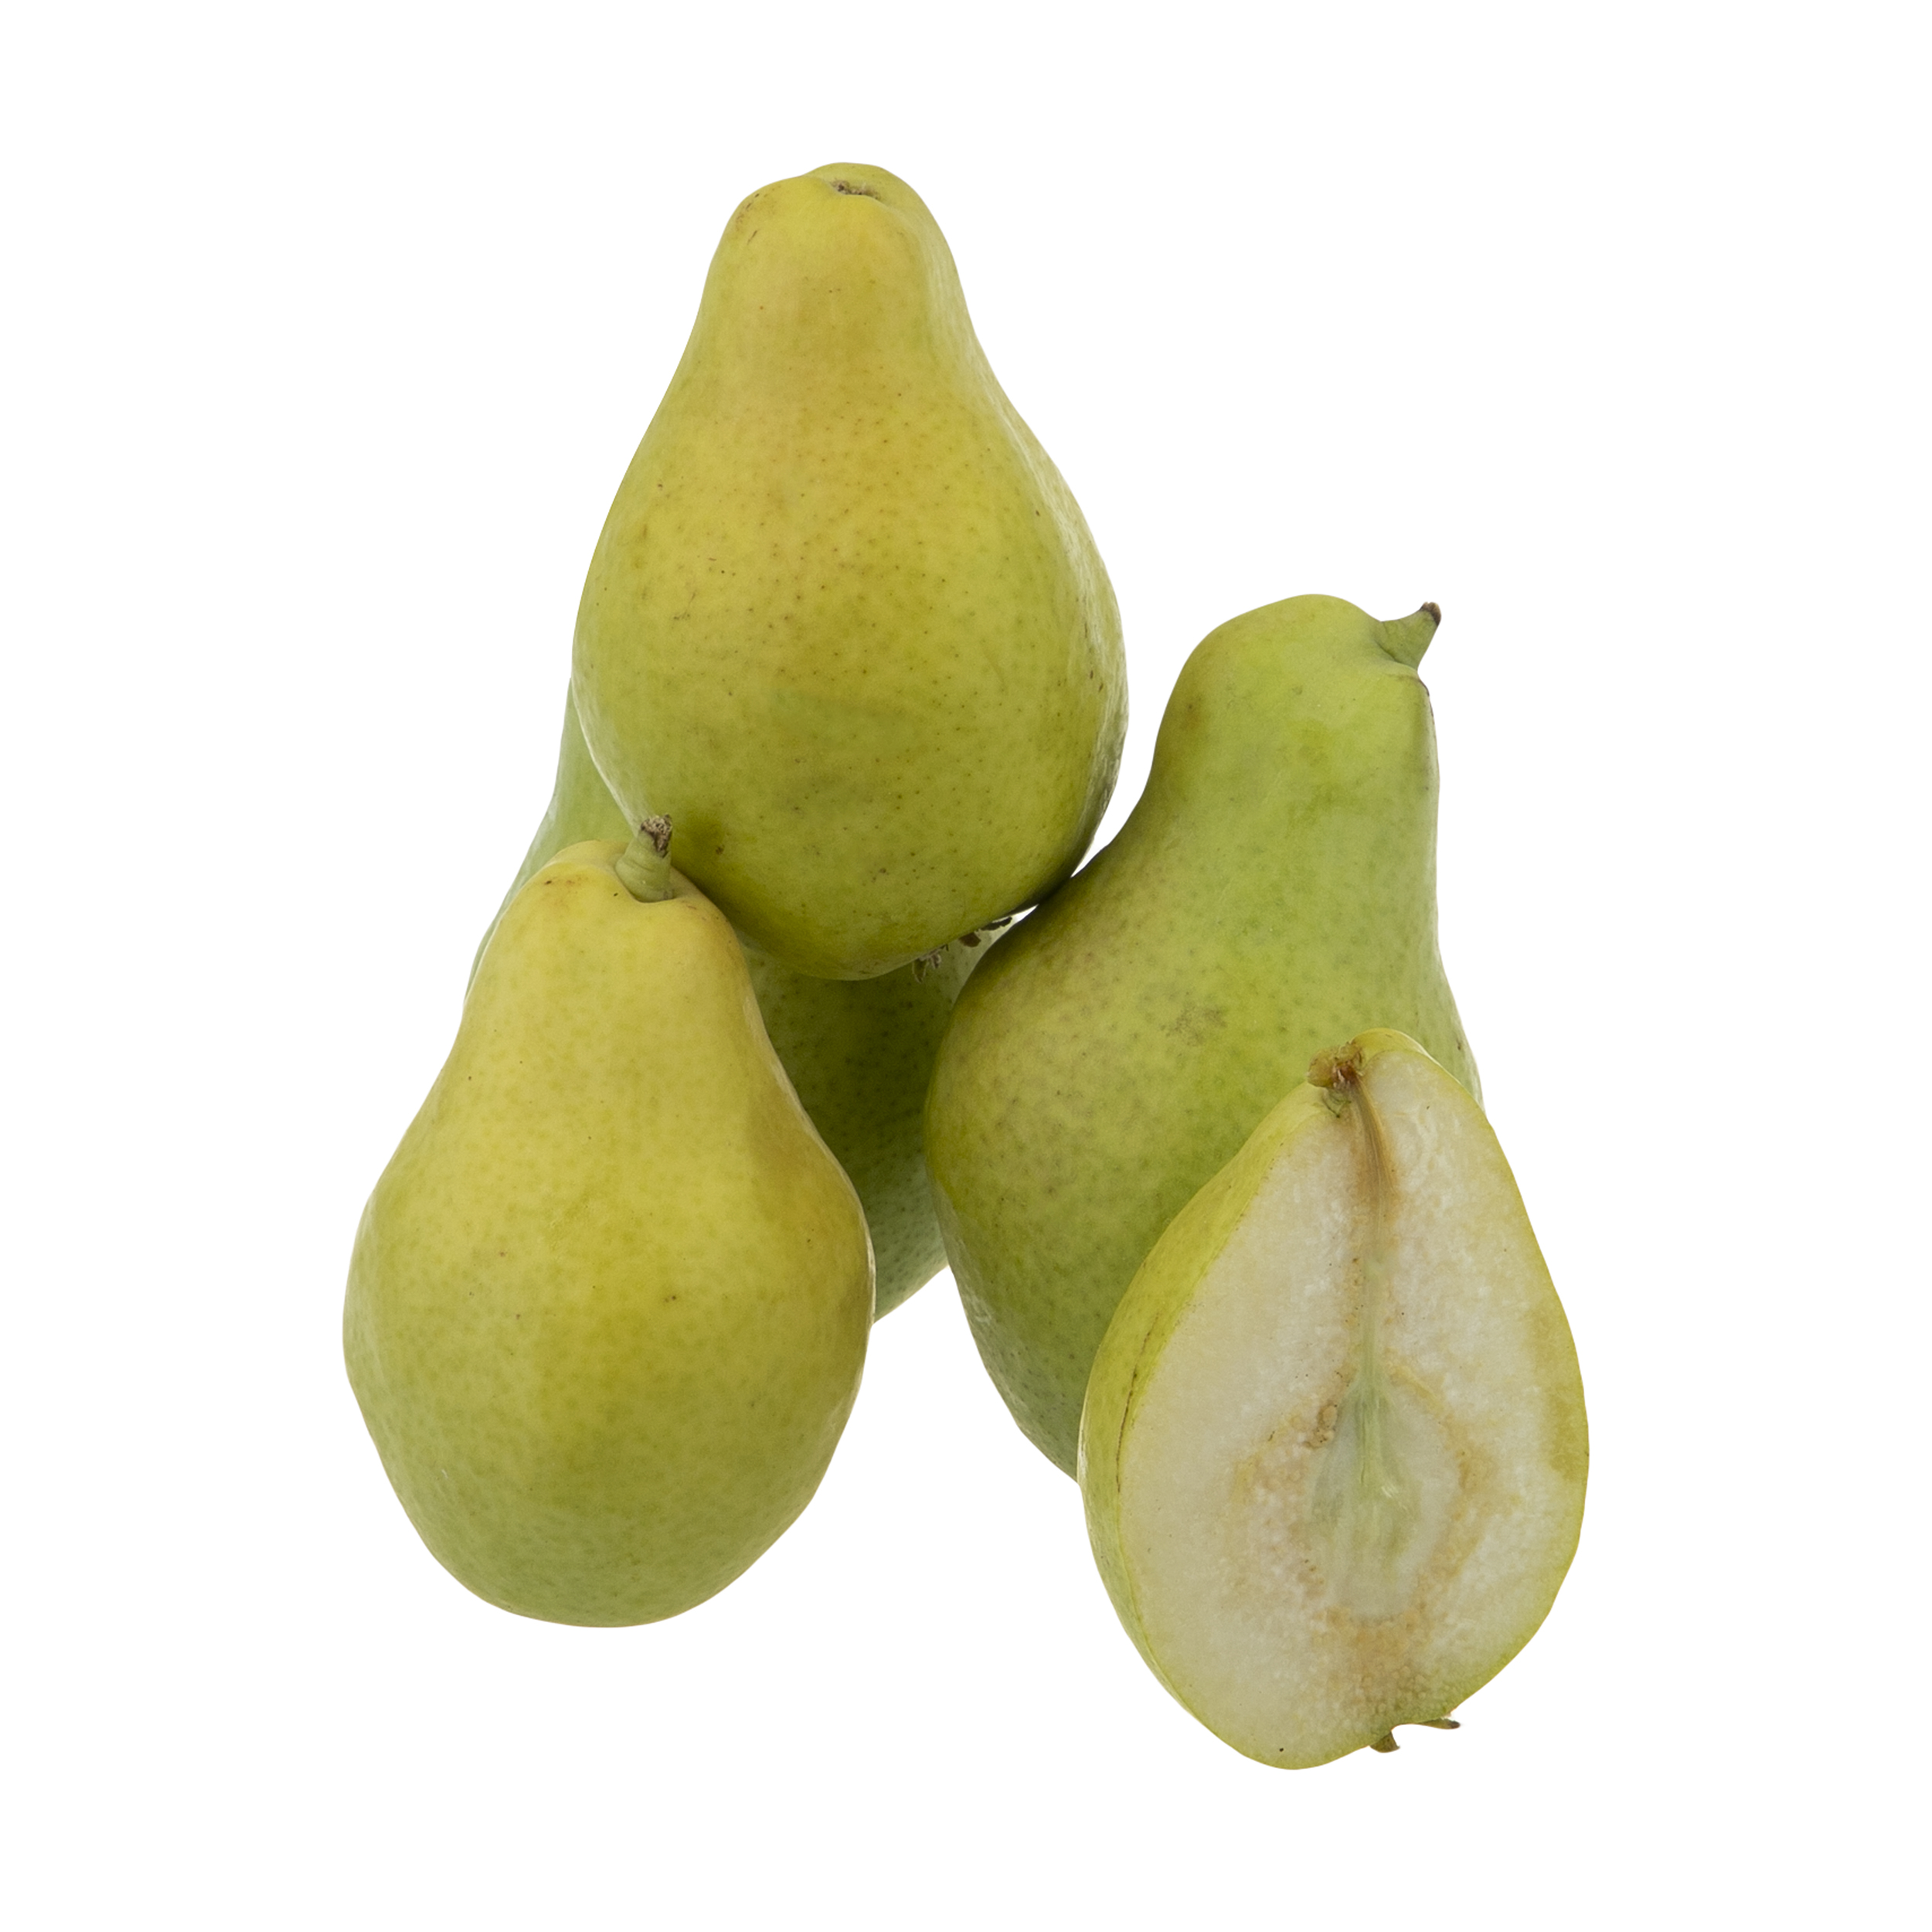 گلابی شاه میوه بلوط - 1 کیلوگرم